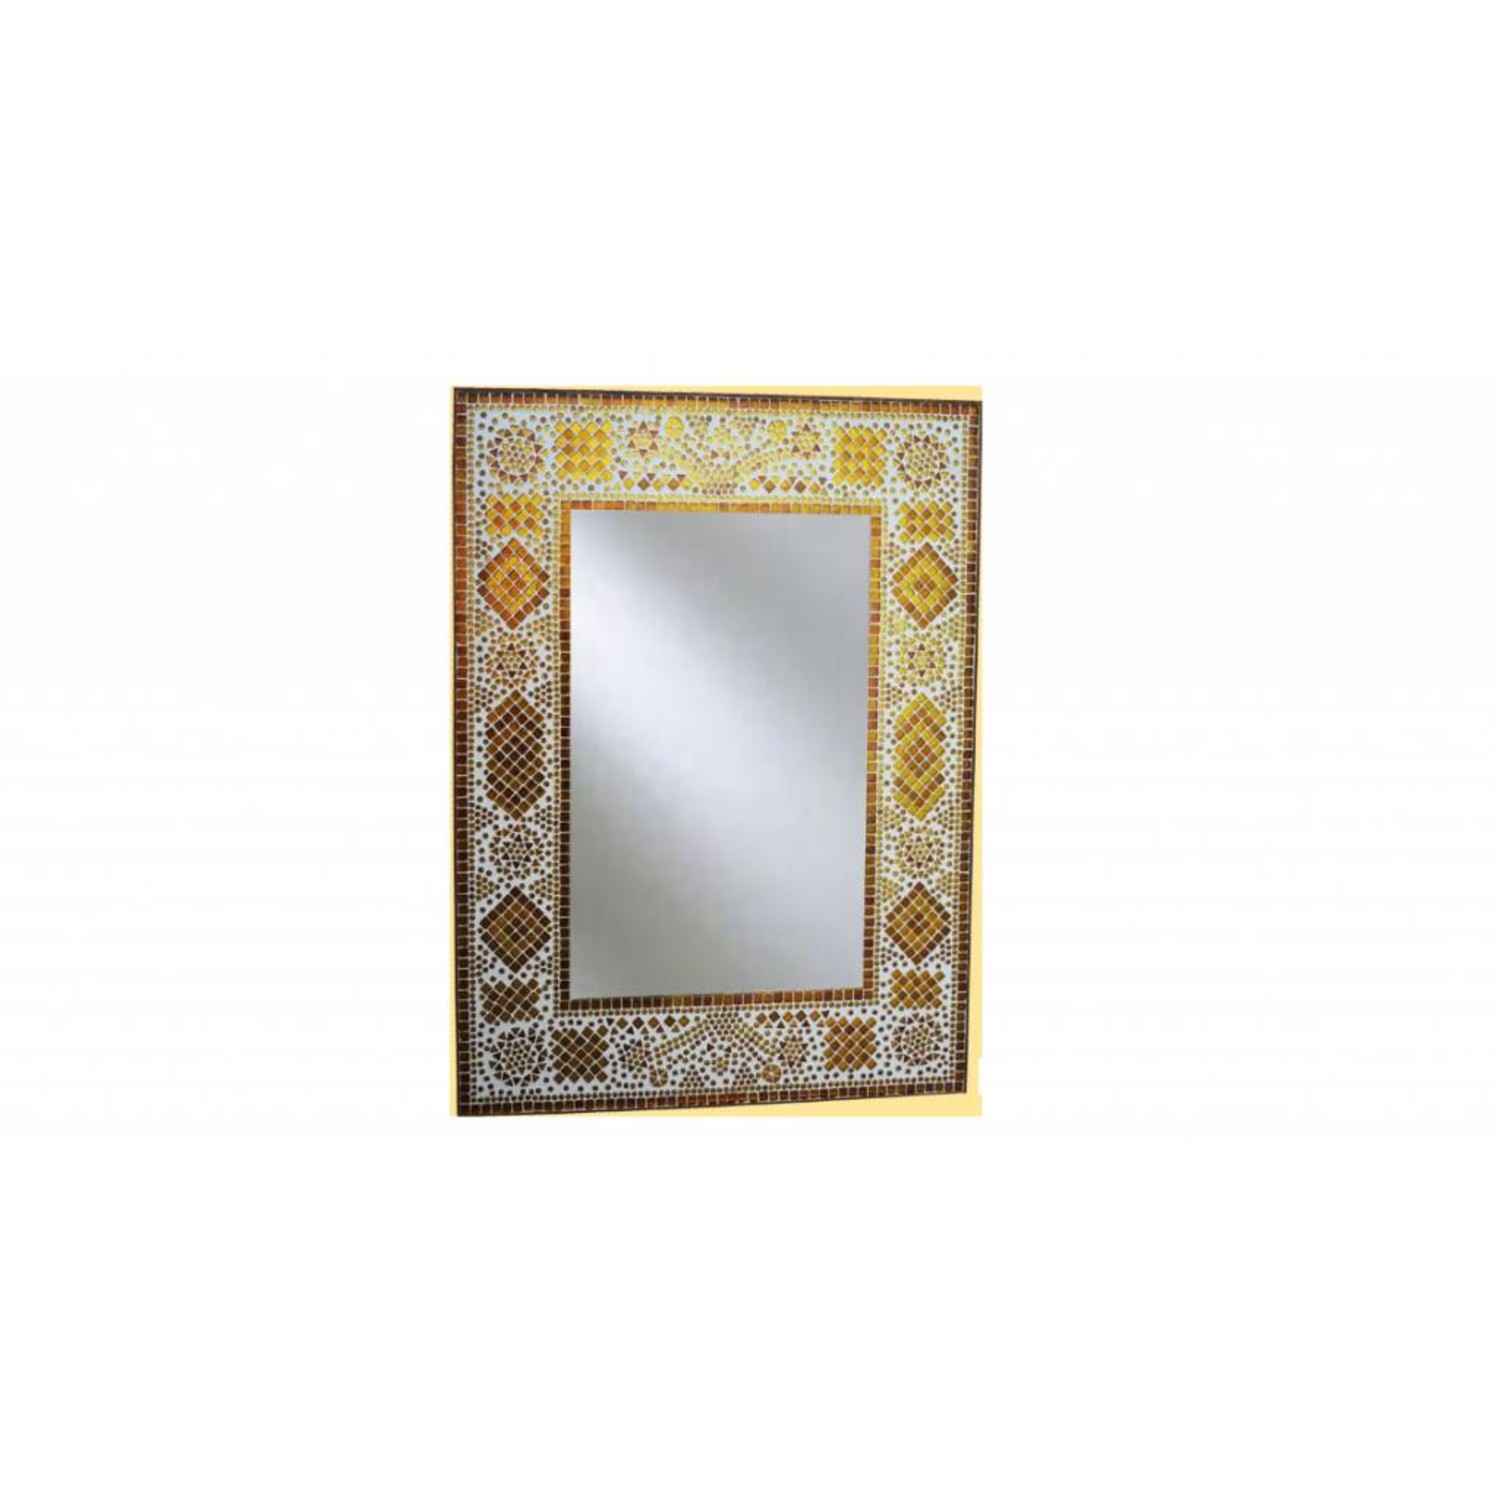 Ampère Inactief Vertrouwelijk Oosterse spiegel bruin goud mozaïek glas - Merel in Wonderland